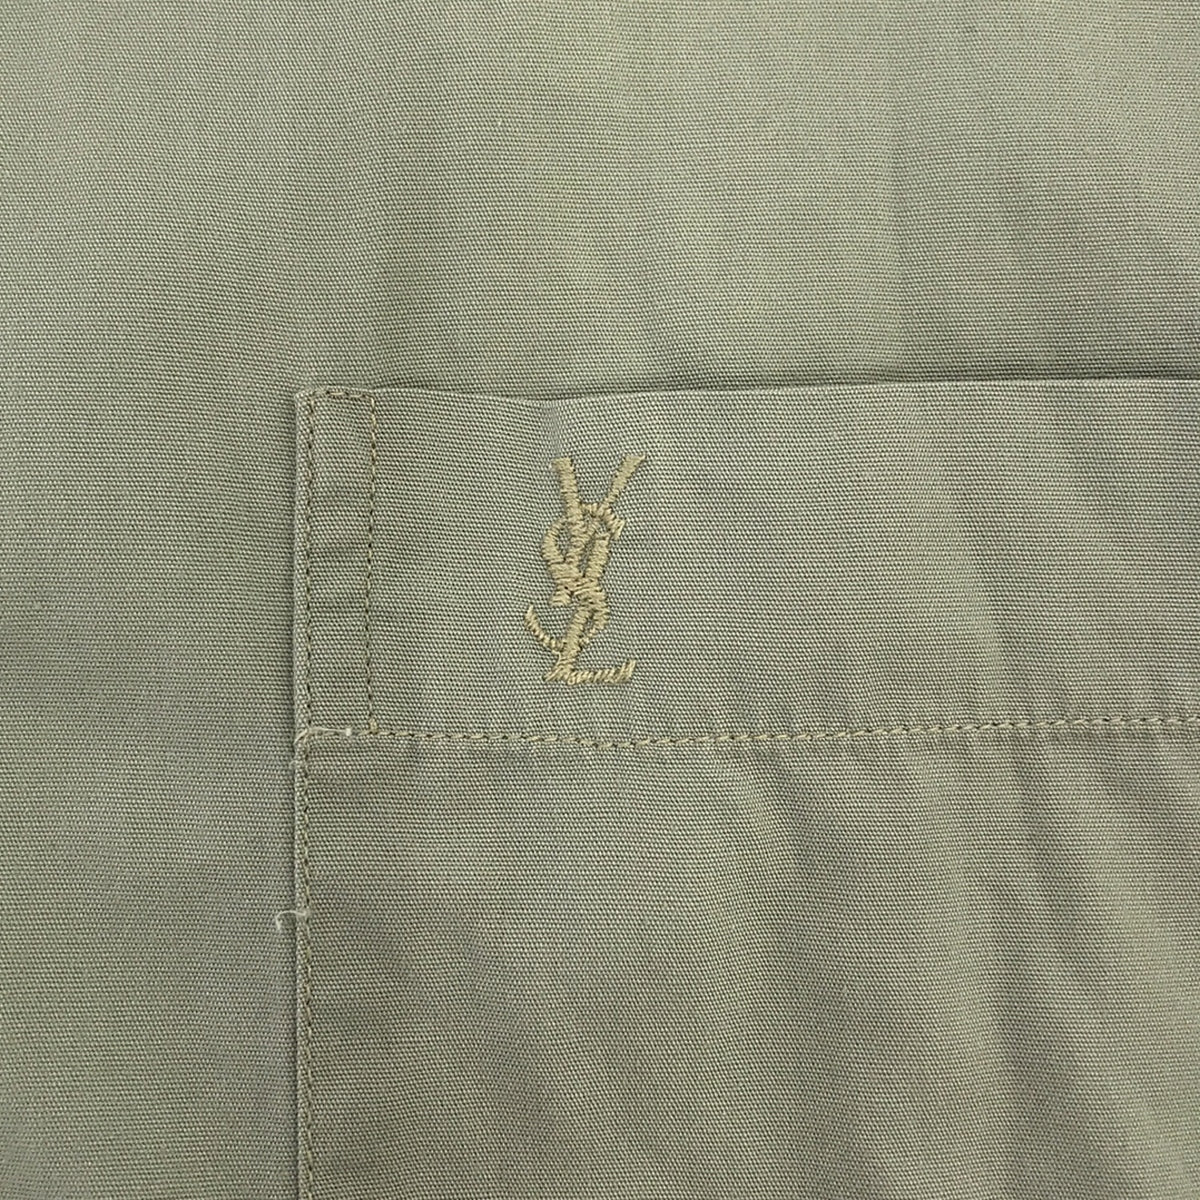 YVES SAINT LAURENT / イヴサンローラン | ロゴ刺しゅう スタンダードシャツ | 40 | グレー | メンズ